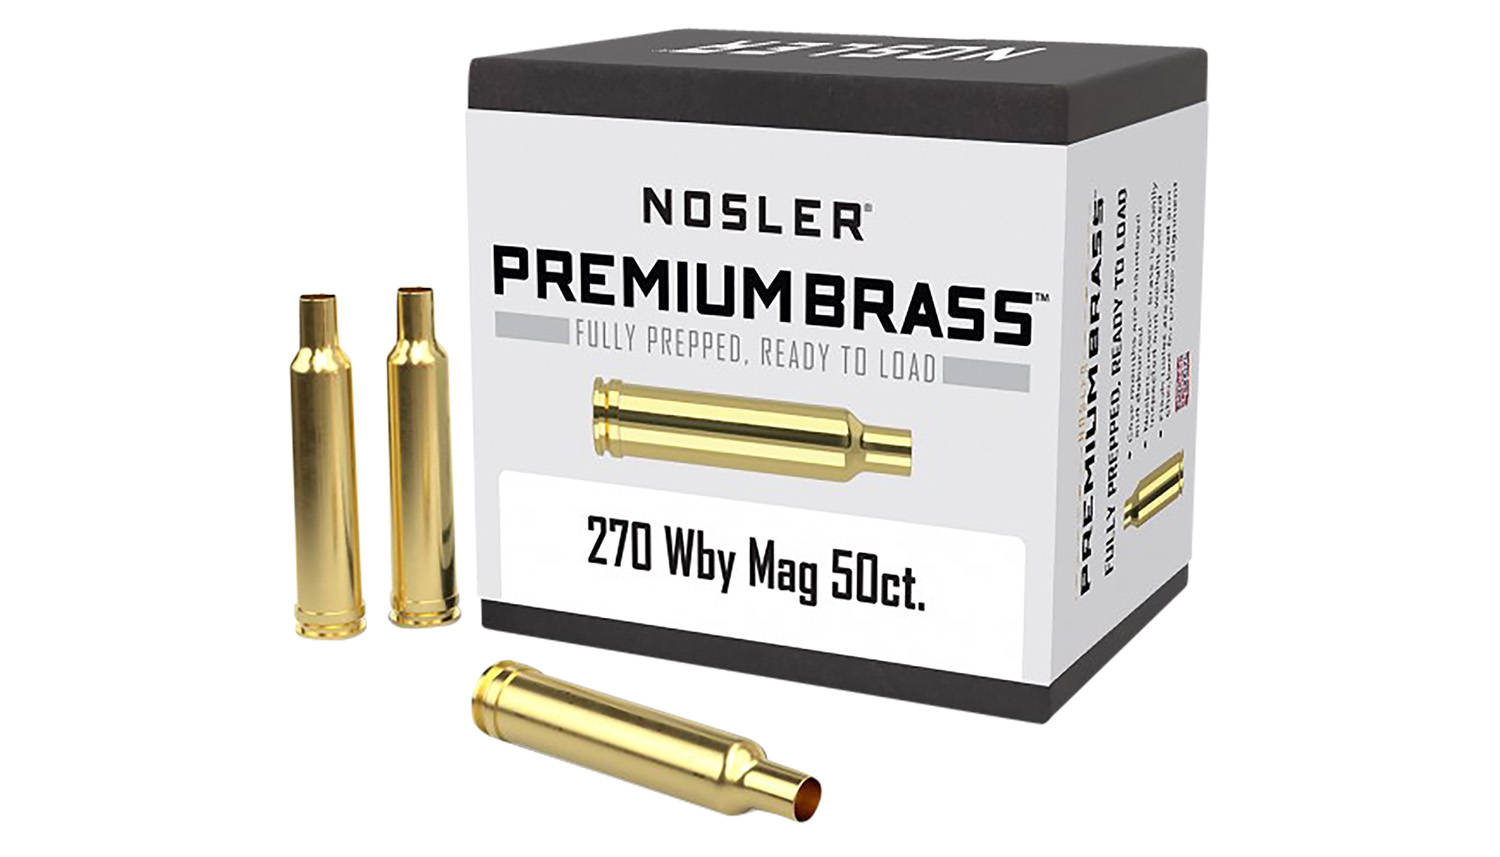 Nosler 270 Wthby Mag Unprimed Rifle Brass 50 Per Box | BFAM Utah Inc